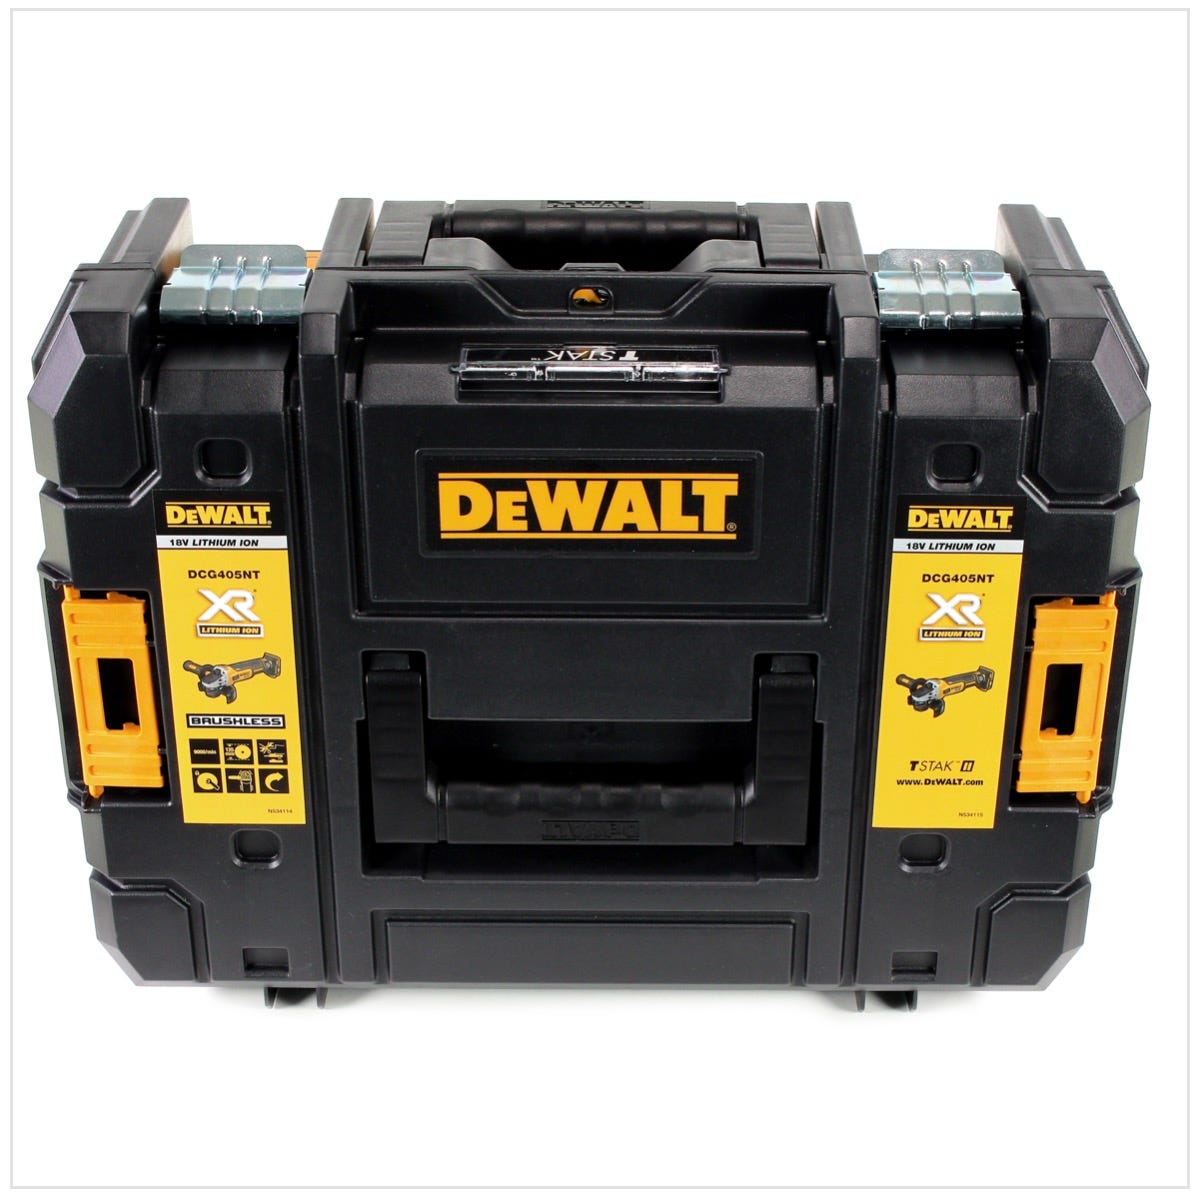 DeWalt DCG 405 P1 18 V 125 mm Meuleuse sans fil Brushless avec boîtier TStak + 1x Batterie 5 Ah + Chargeur 2